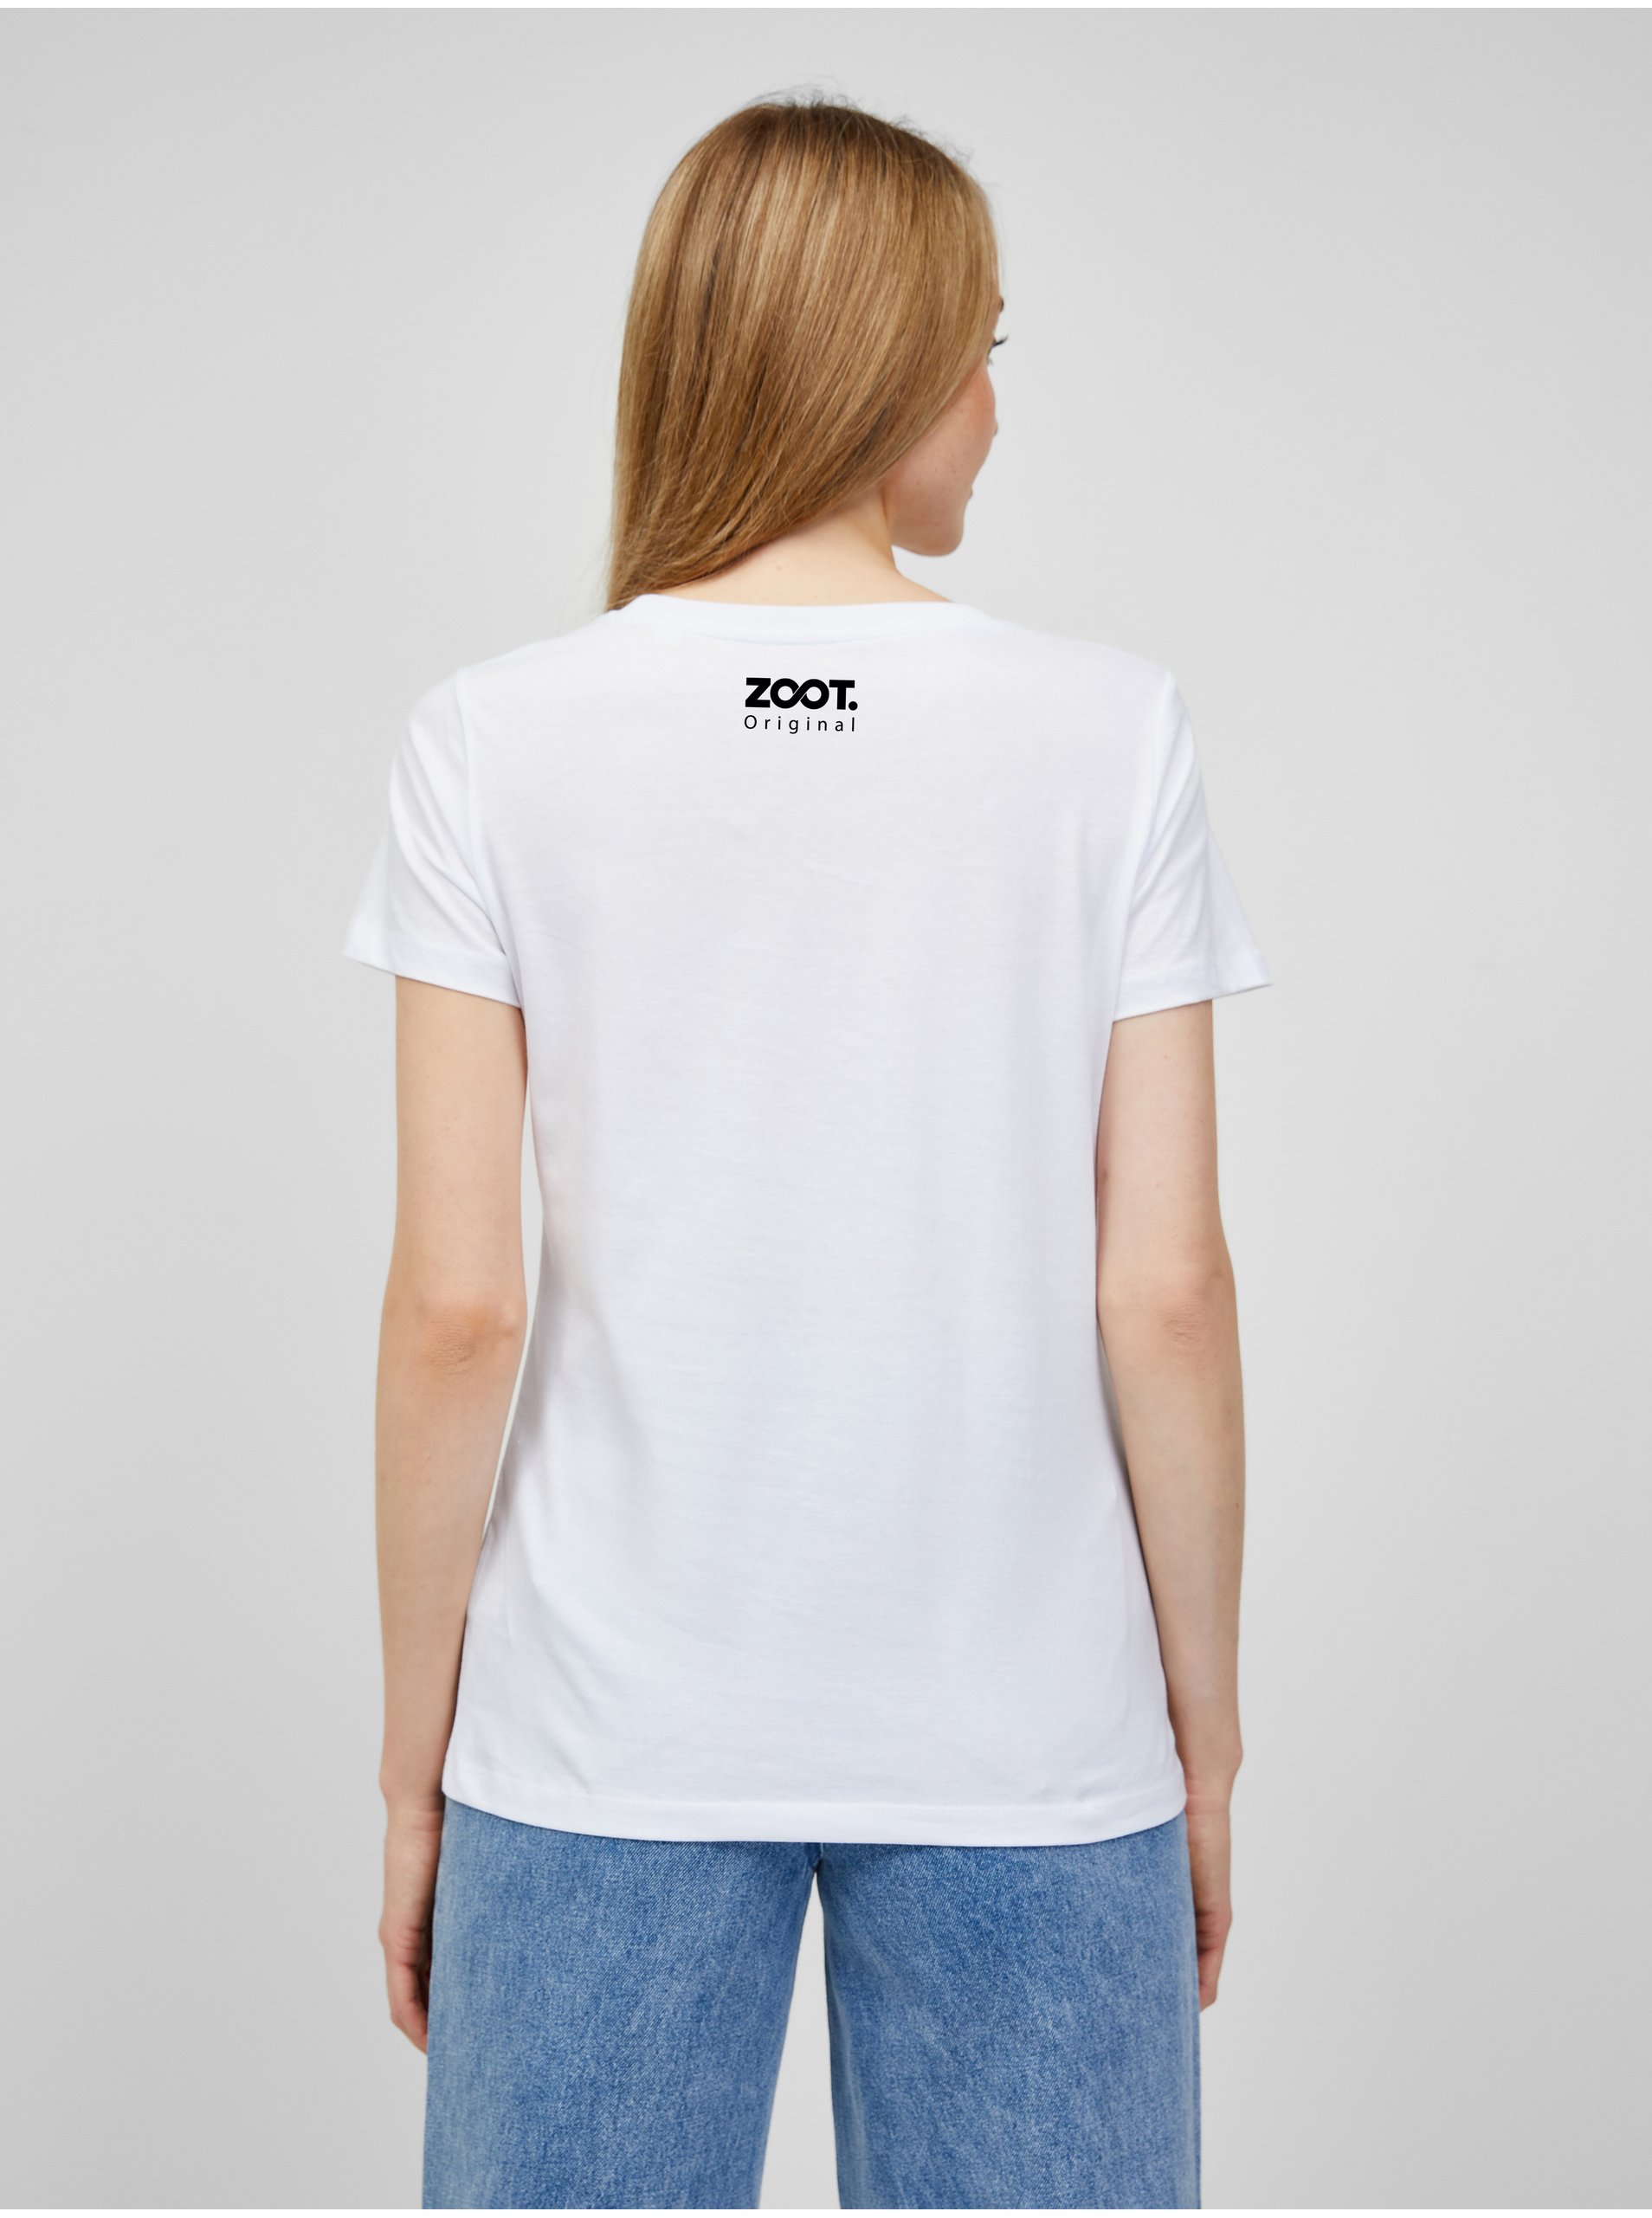 Bílé dámské tričko s potiskem ZOOT.Original Polibek